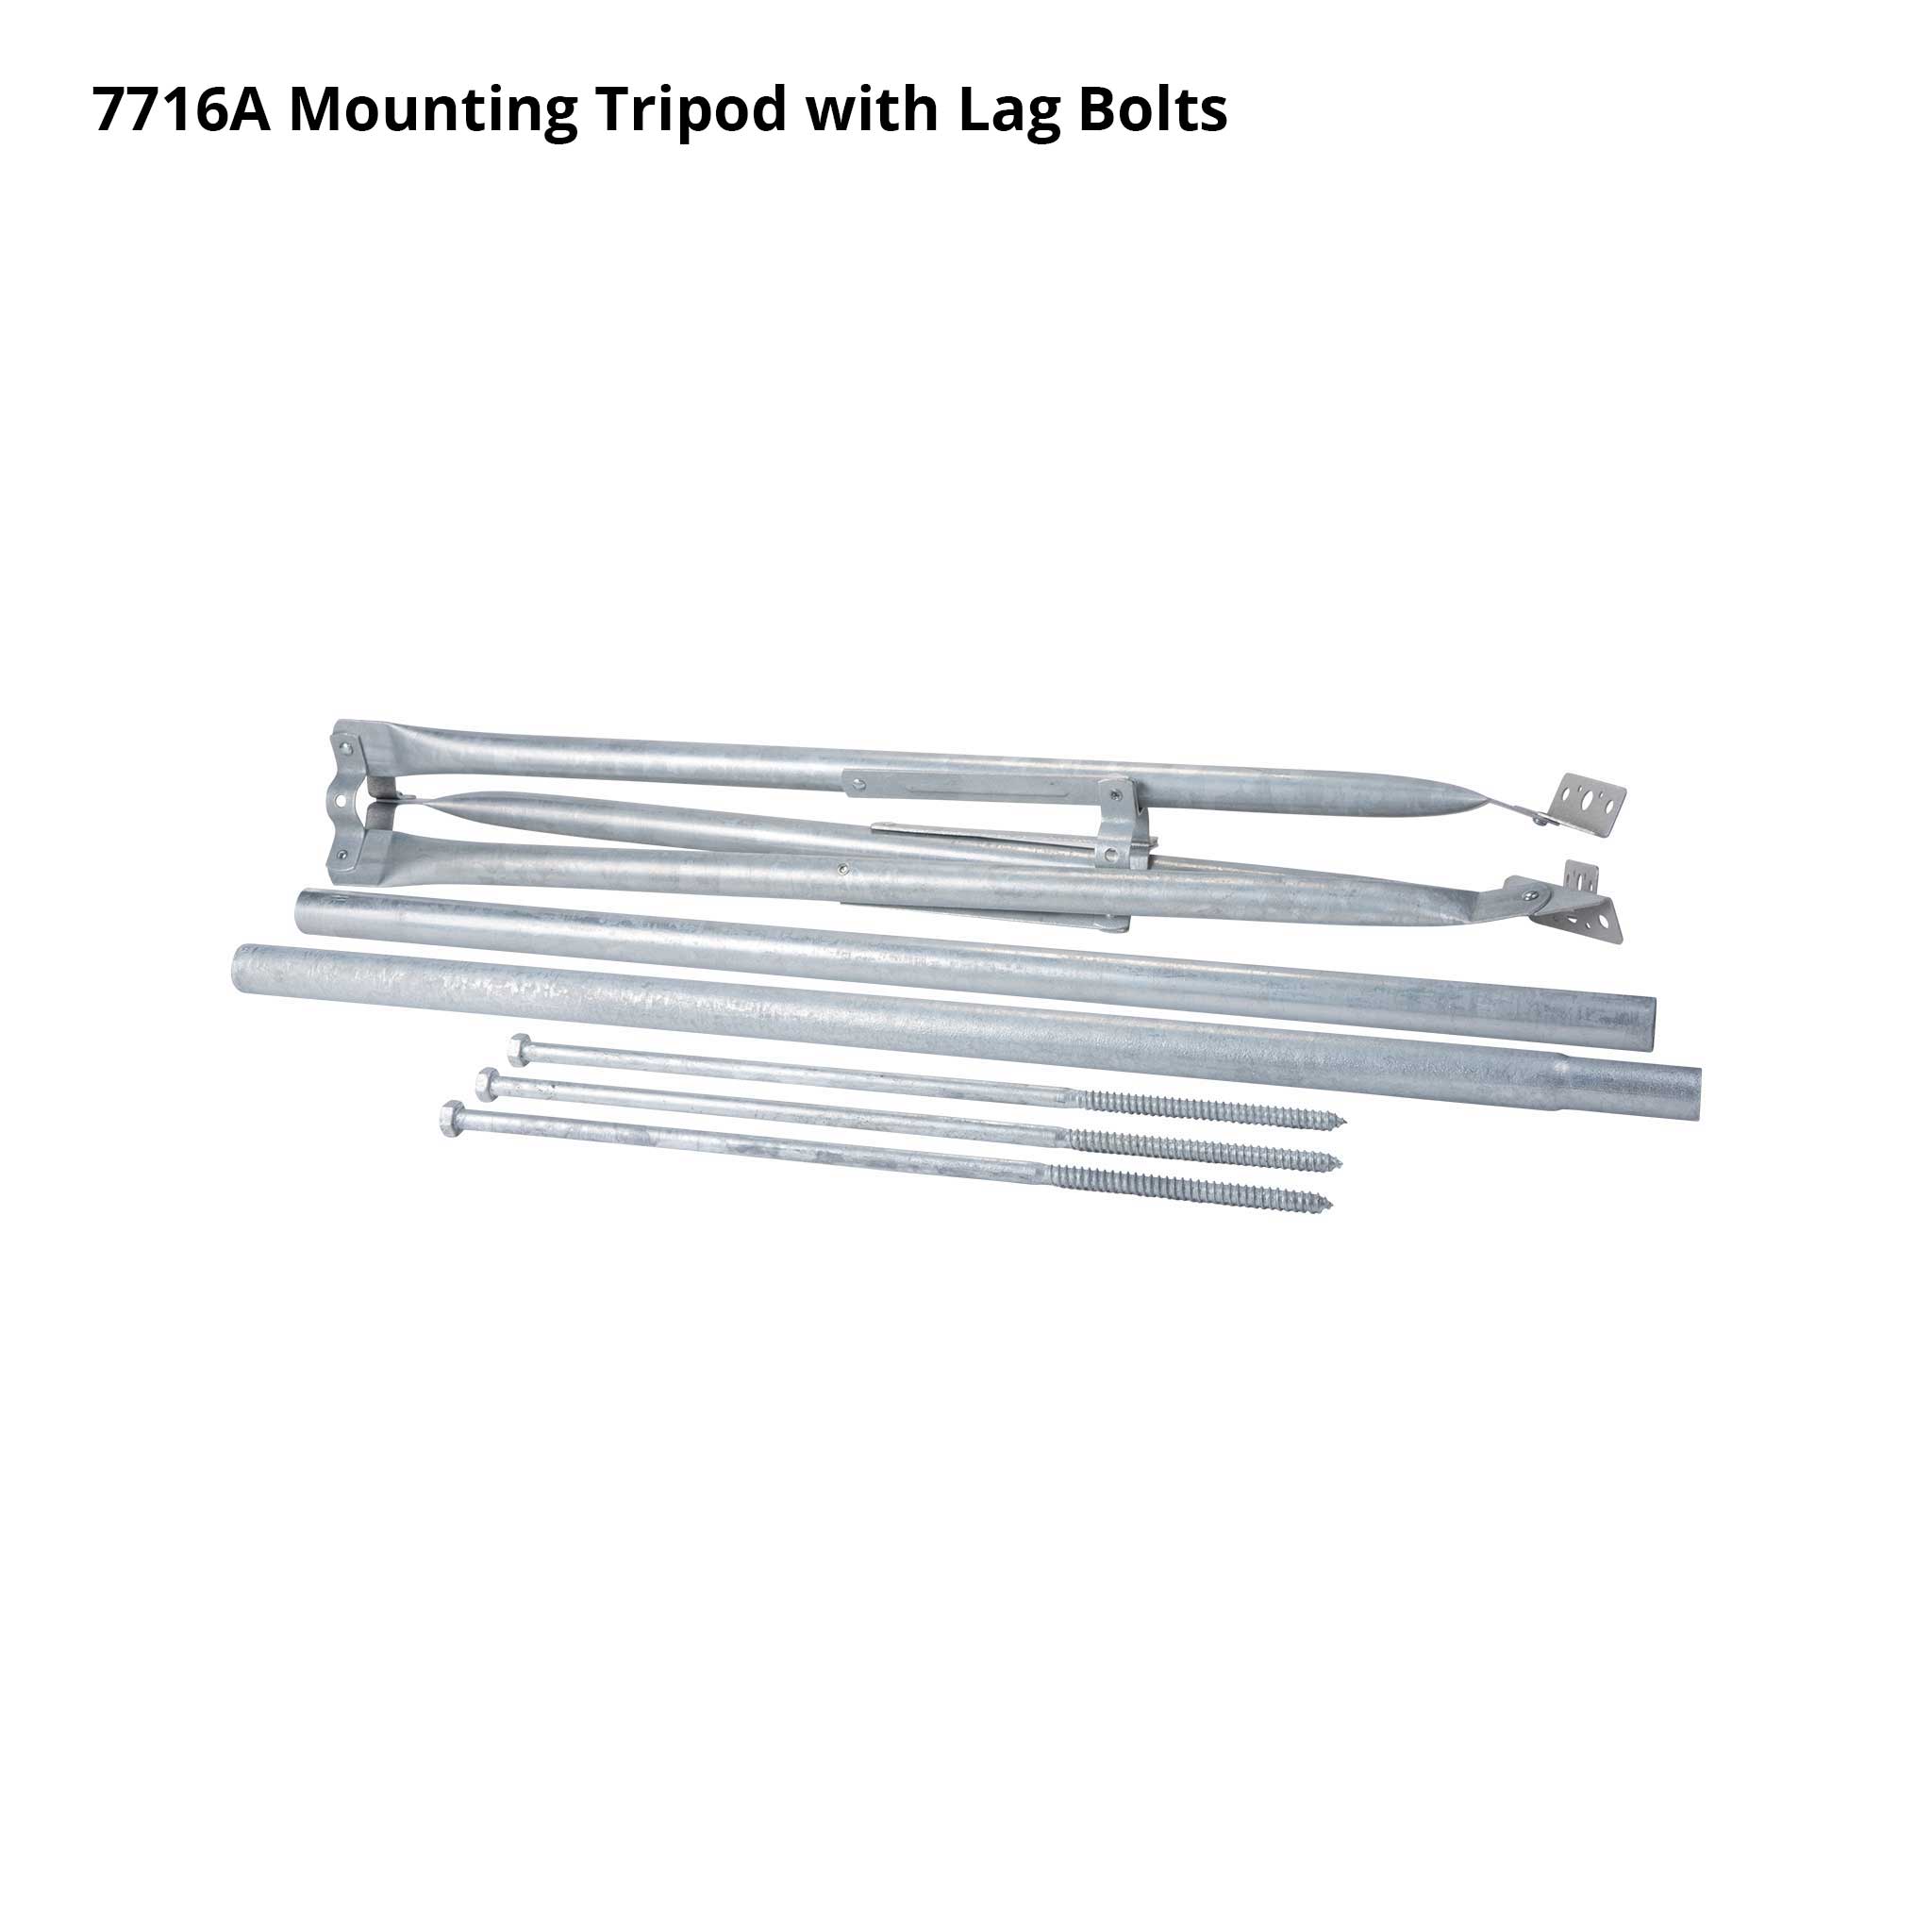 Mounting Tripod - SKU 7716, 7716A